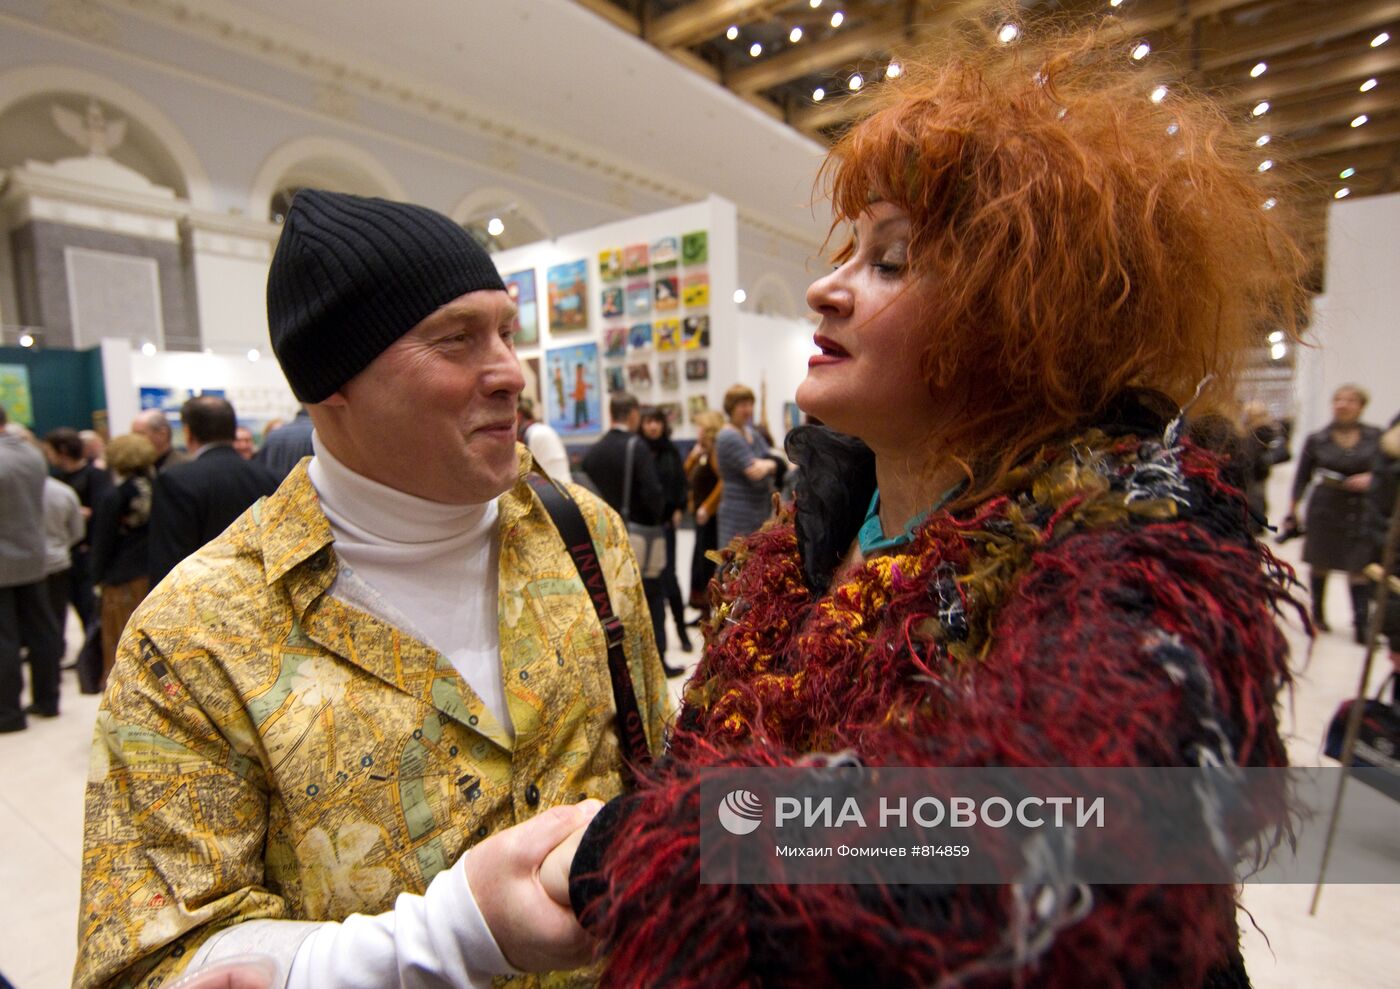 Открытие XV Московской художественной ярмарки "Арт Манеж 2010"